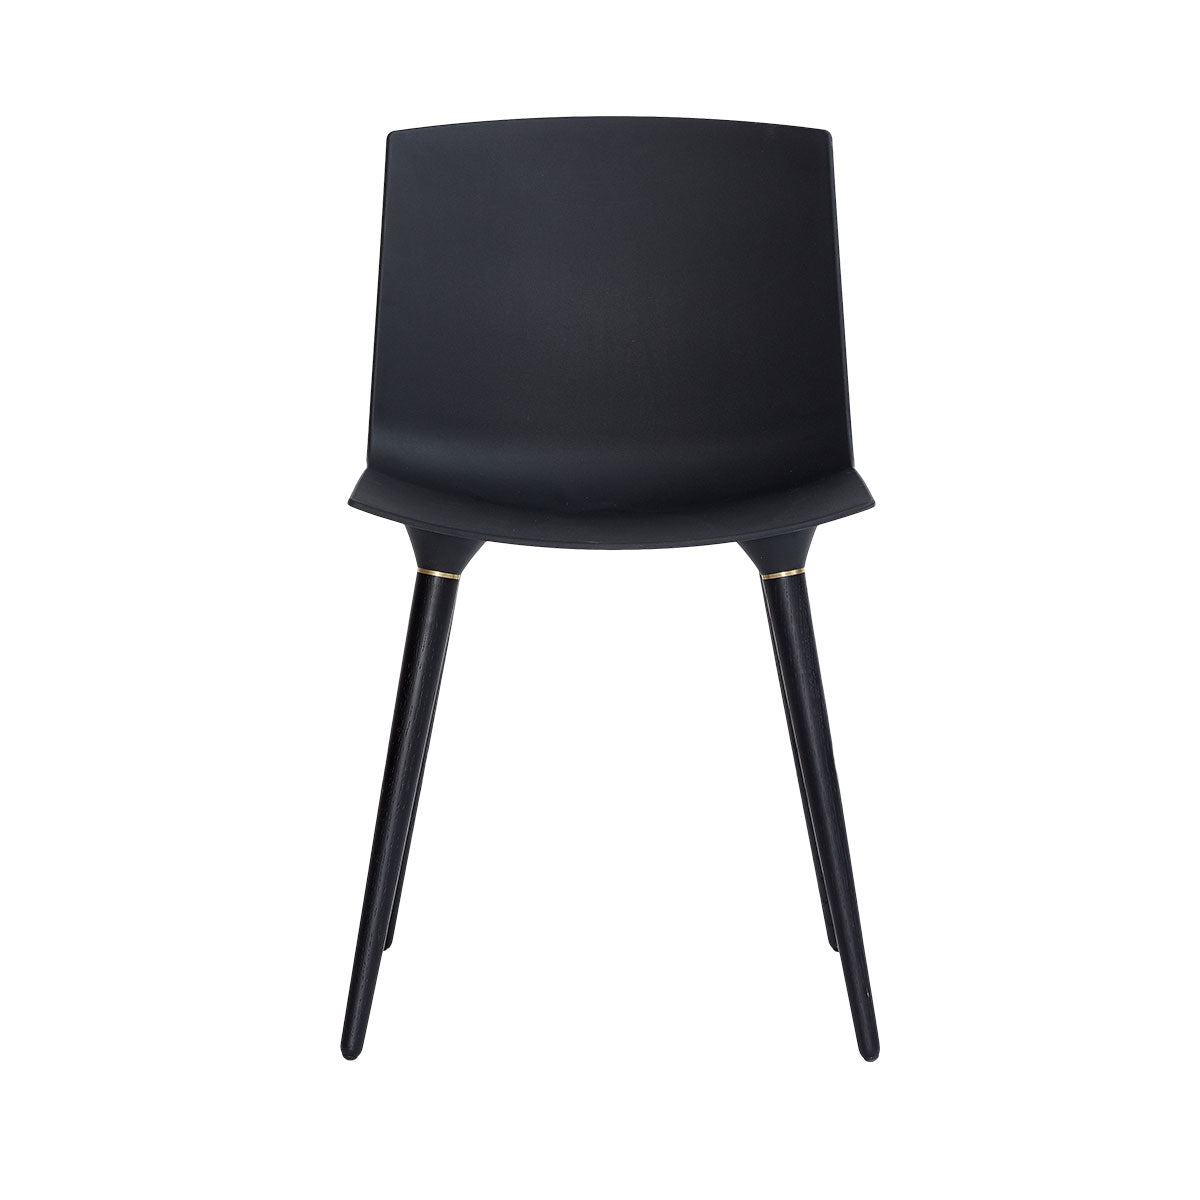 Andersen Furniture TAC - sæde i sort - ben i eg/sort lakeret - DesignGaragen.dk.